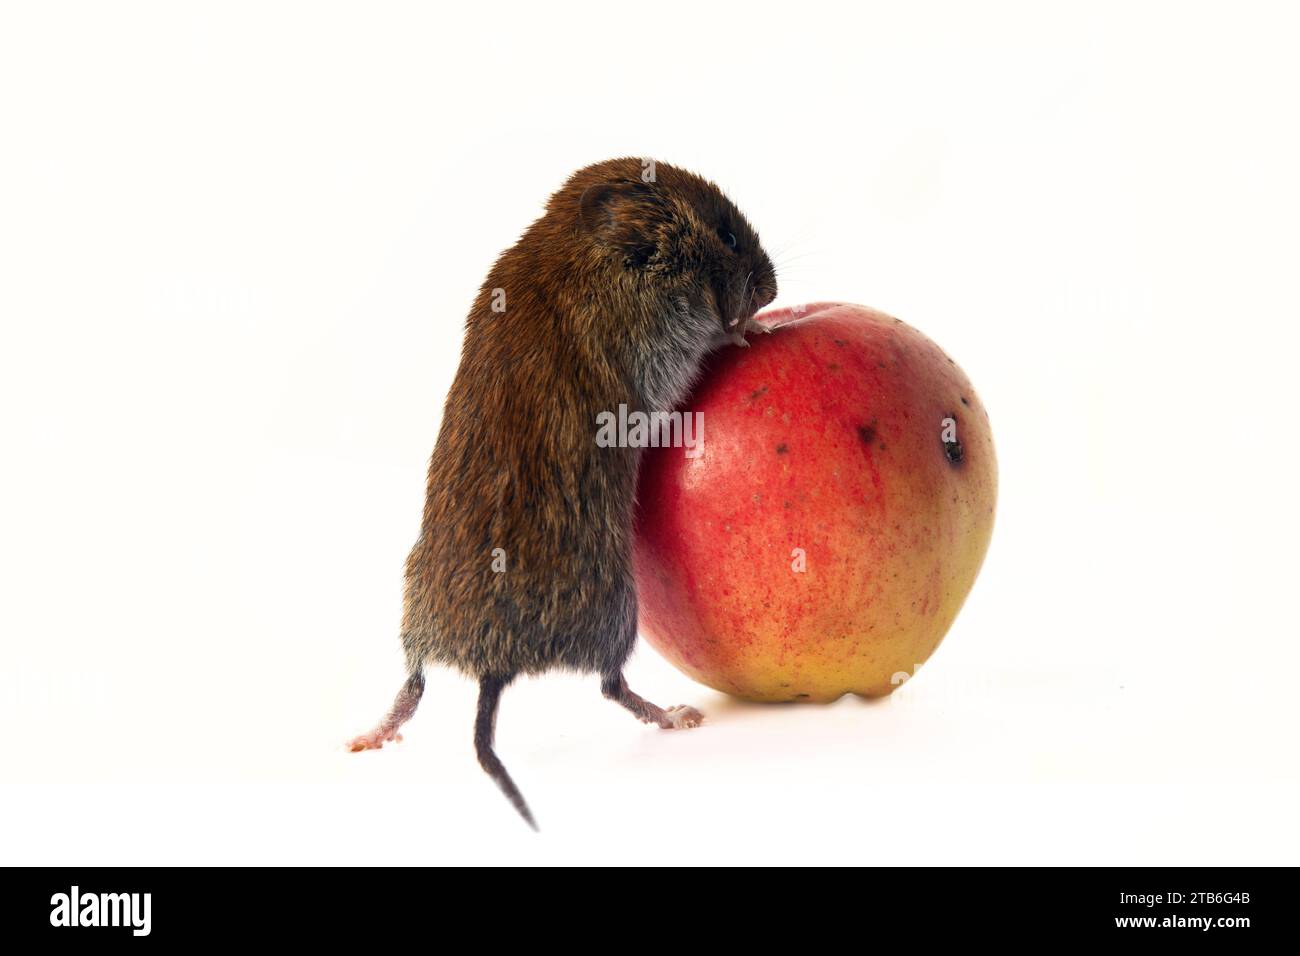 Società di consumo: Il topo (amante delle azioni) rotola una mela enorme del worm. Il principio del consumismo americano di New York quanto più possibile concetto di vendita. Cancella Foto Stock